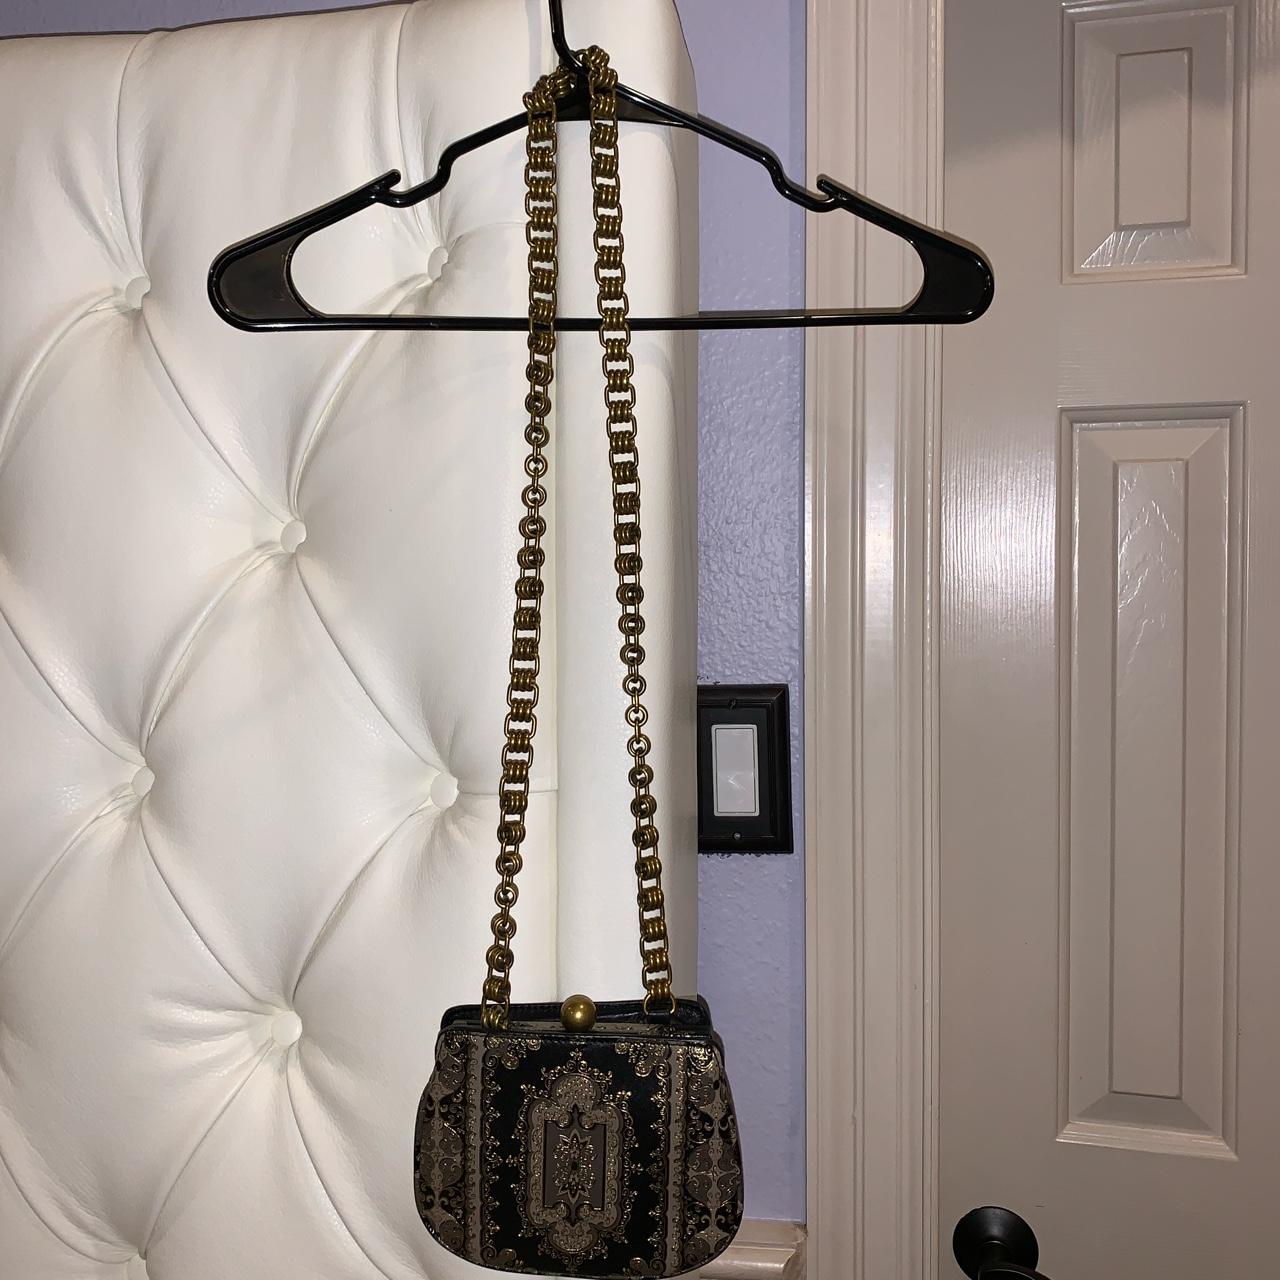 Vintage black purse with metal handle Super cute - Depop